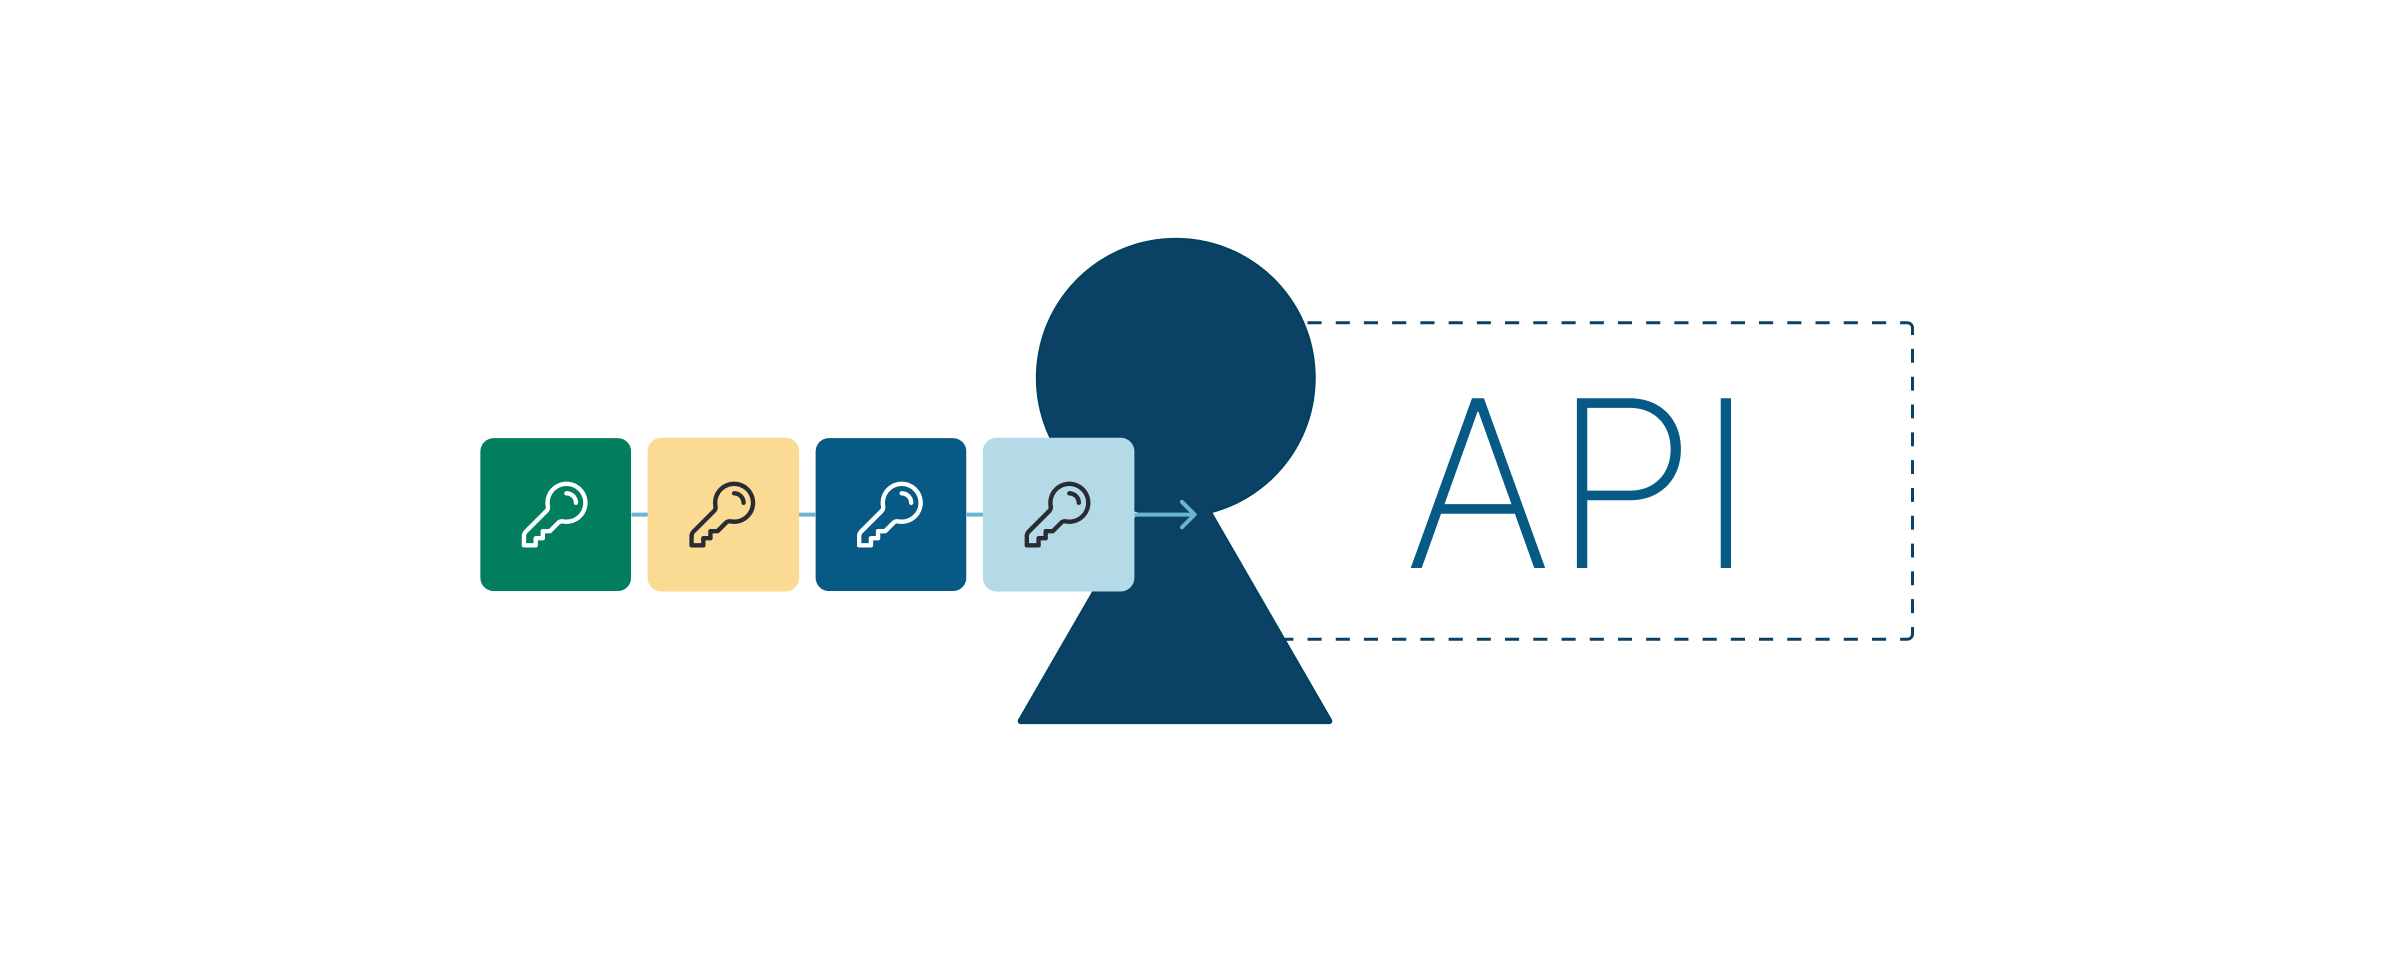 Ilustração que mostra quatro novas chaves de API para autorização segura